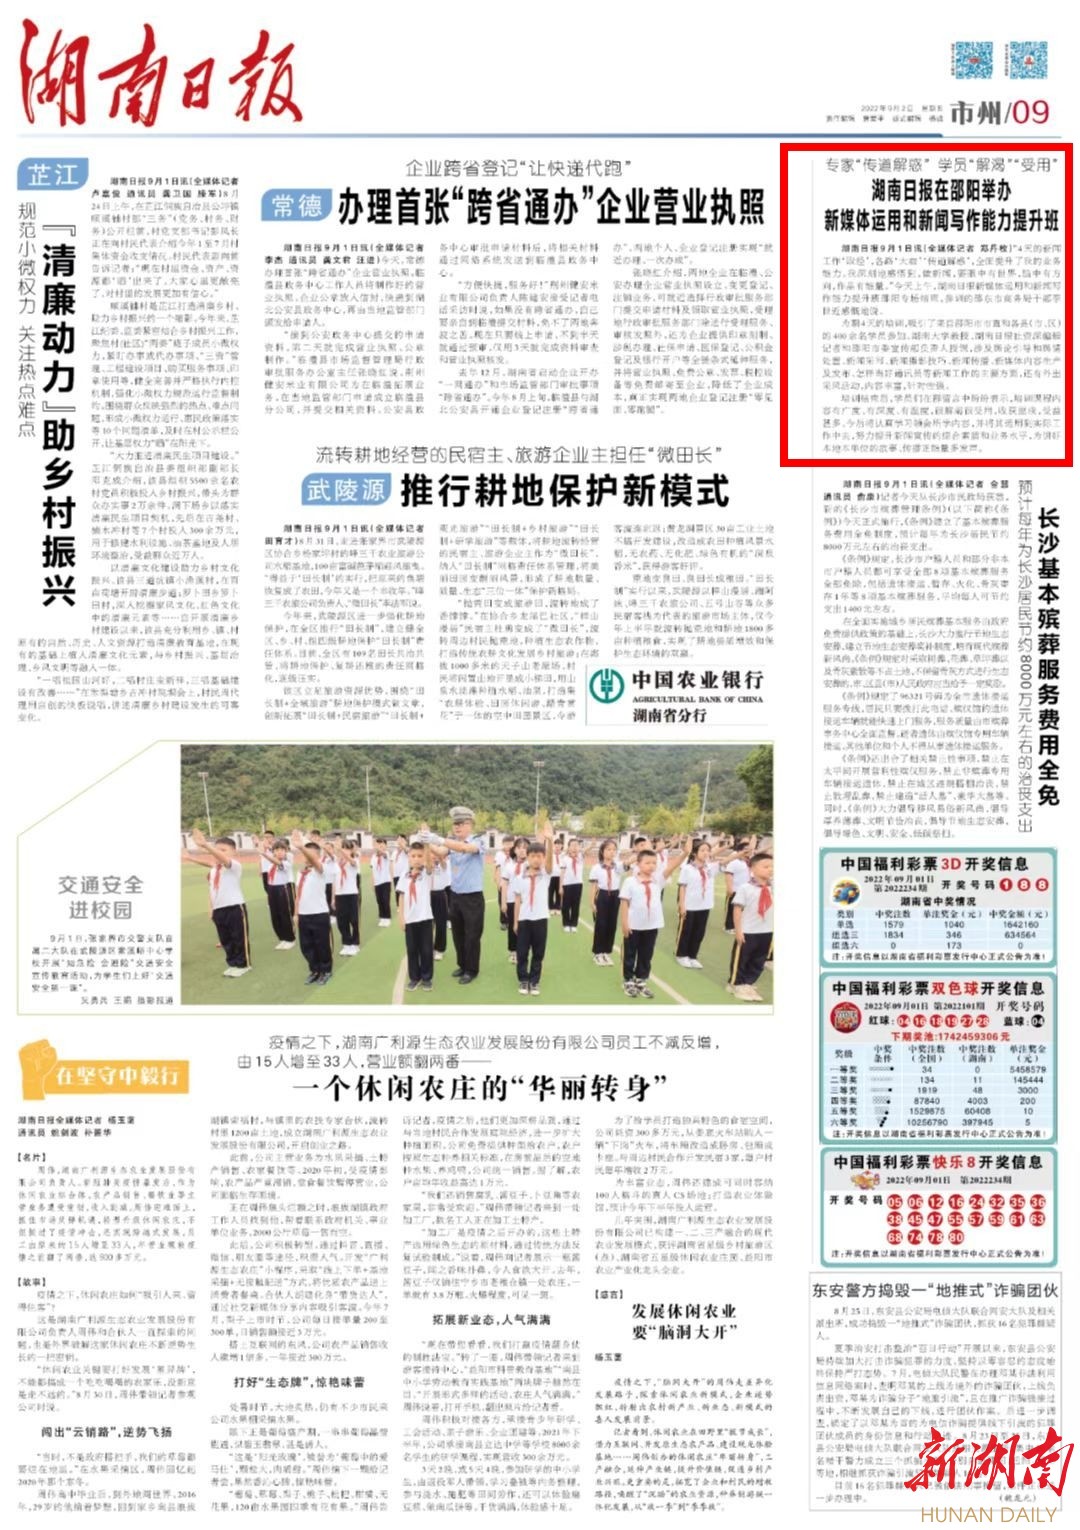 专家“传道解惑” 学员“解渴”“受用” 湖南日报在邵阳举办新媒体运用和新闻写作能力提升班